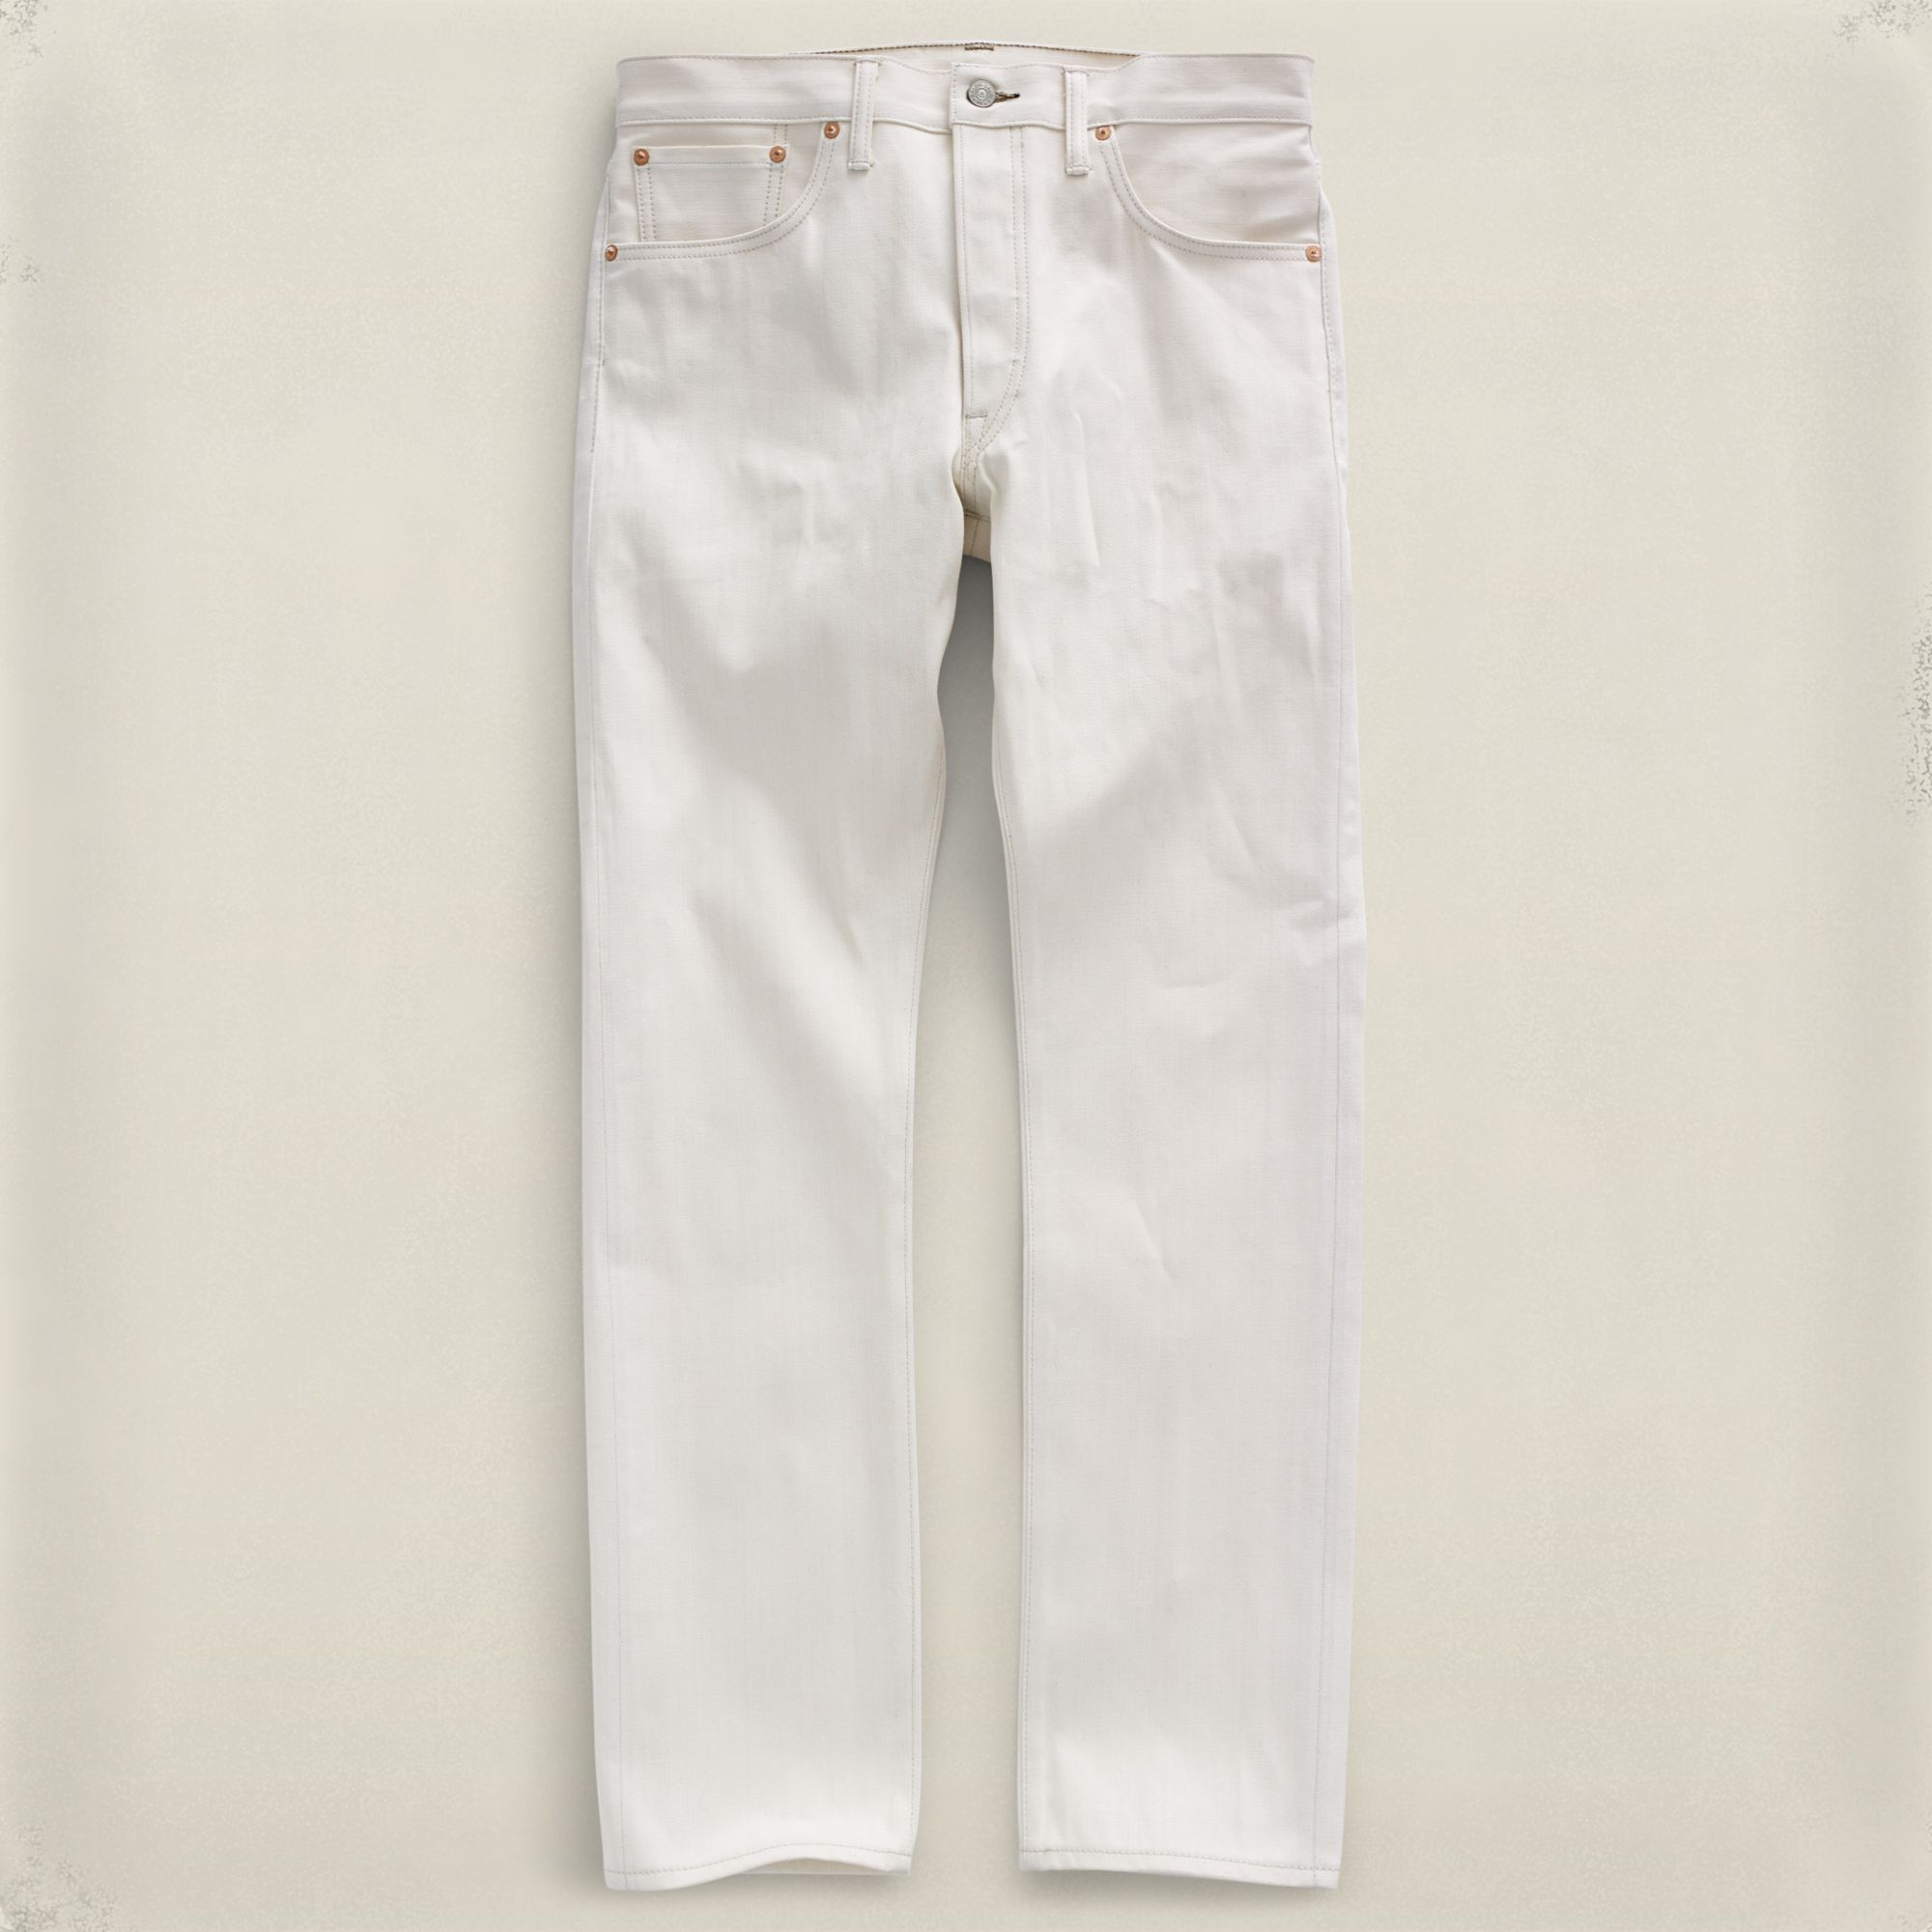 rrl white jeans